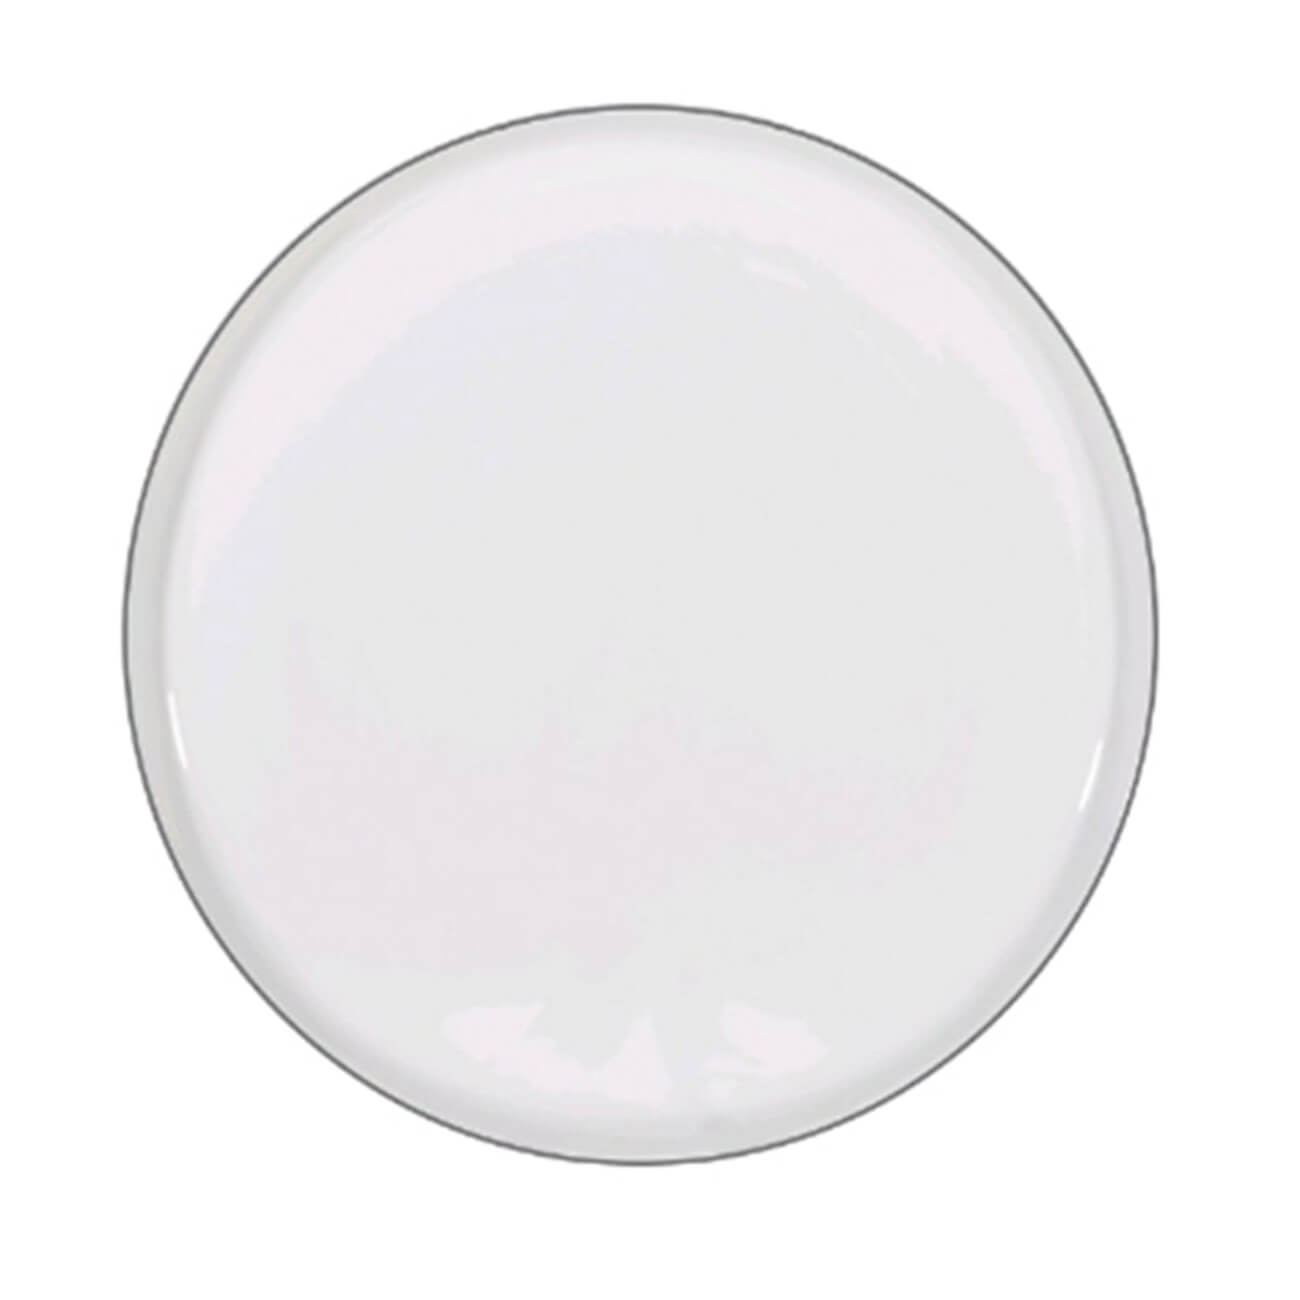 Тарелка десертная, 20 см, 2 шт, фарфор F, белая, Ideal silver десертная тарелка tescoma